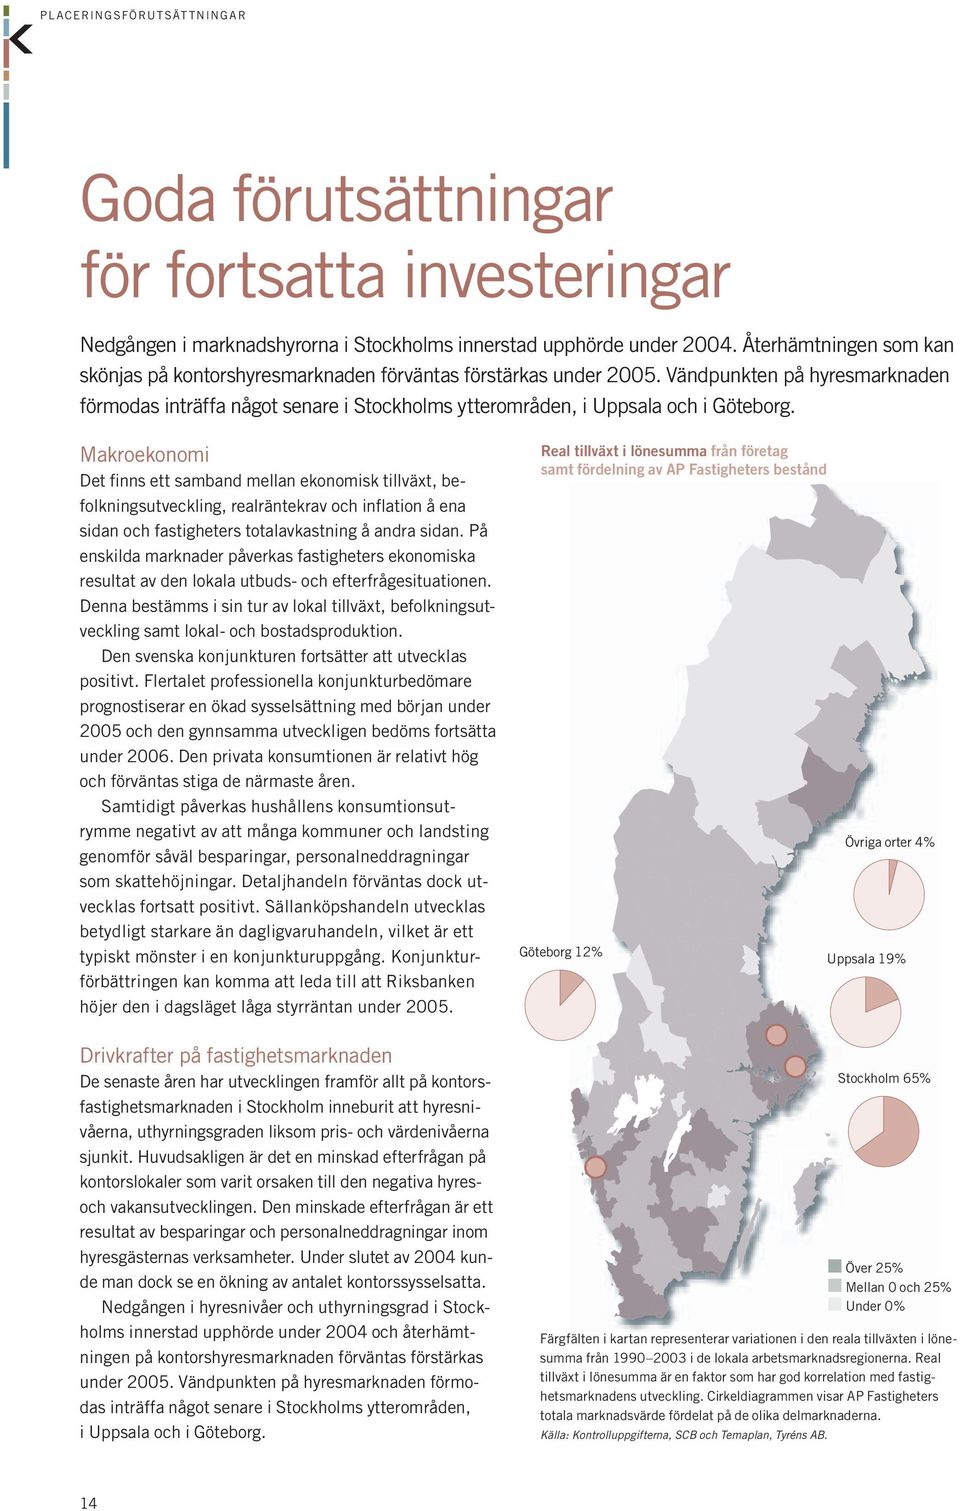 Vändpunkten på hyresmarknaden förmodas inträffa något senare i Stockholms ytterområden, i Uppsala och i Göteborg.